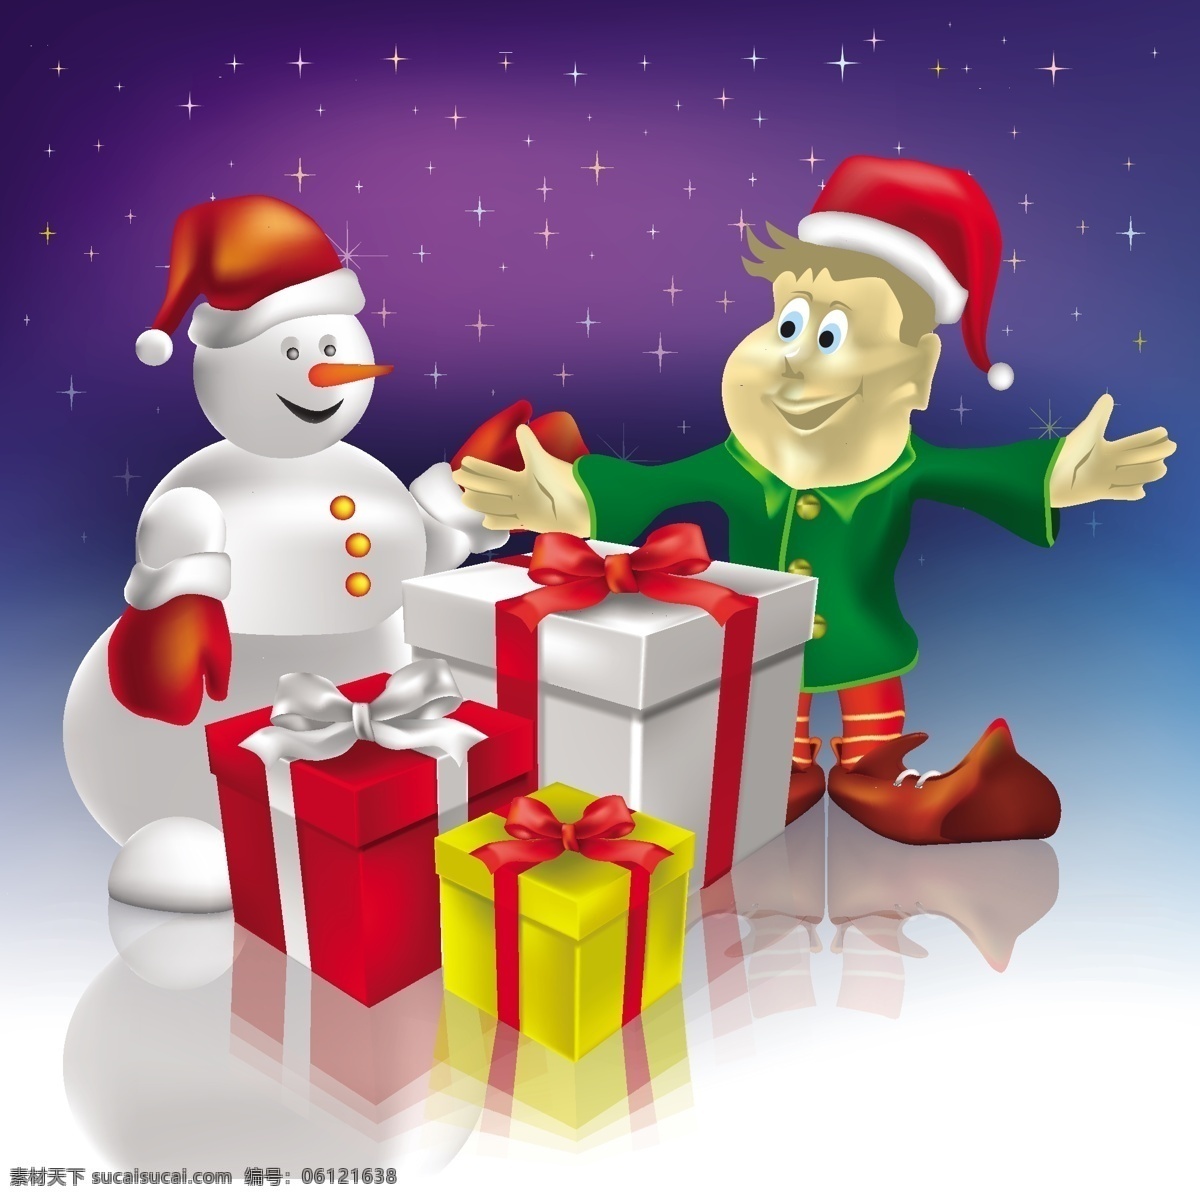 圣诞节 元素 矢量 背景 松树 松树枝 雪人 圣诞帽 手套 礼物 礼盒 雪花 挂球 装饰球 红色